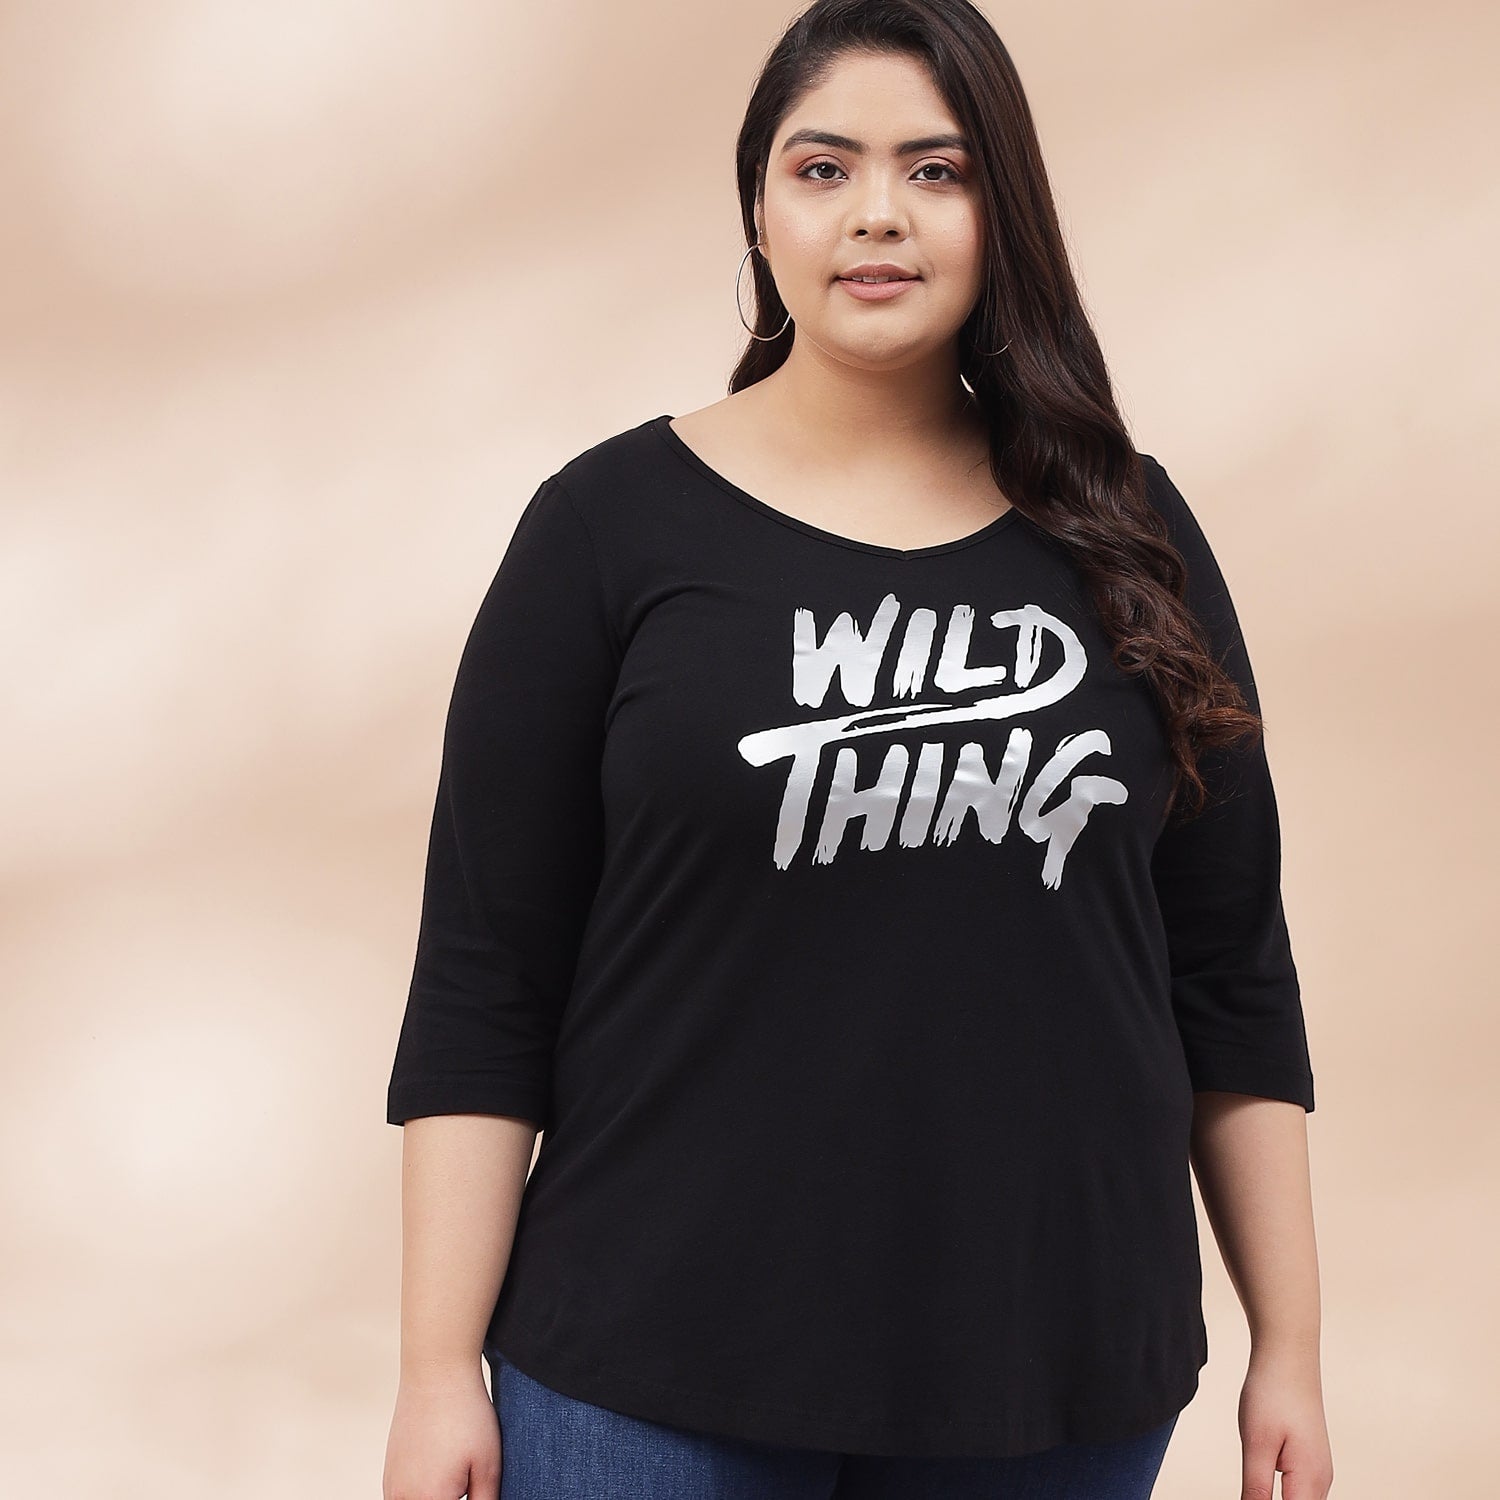 Buy Wild Thing Black Tshirt